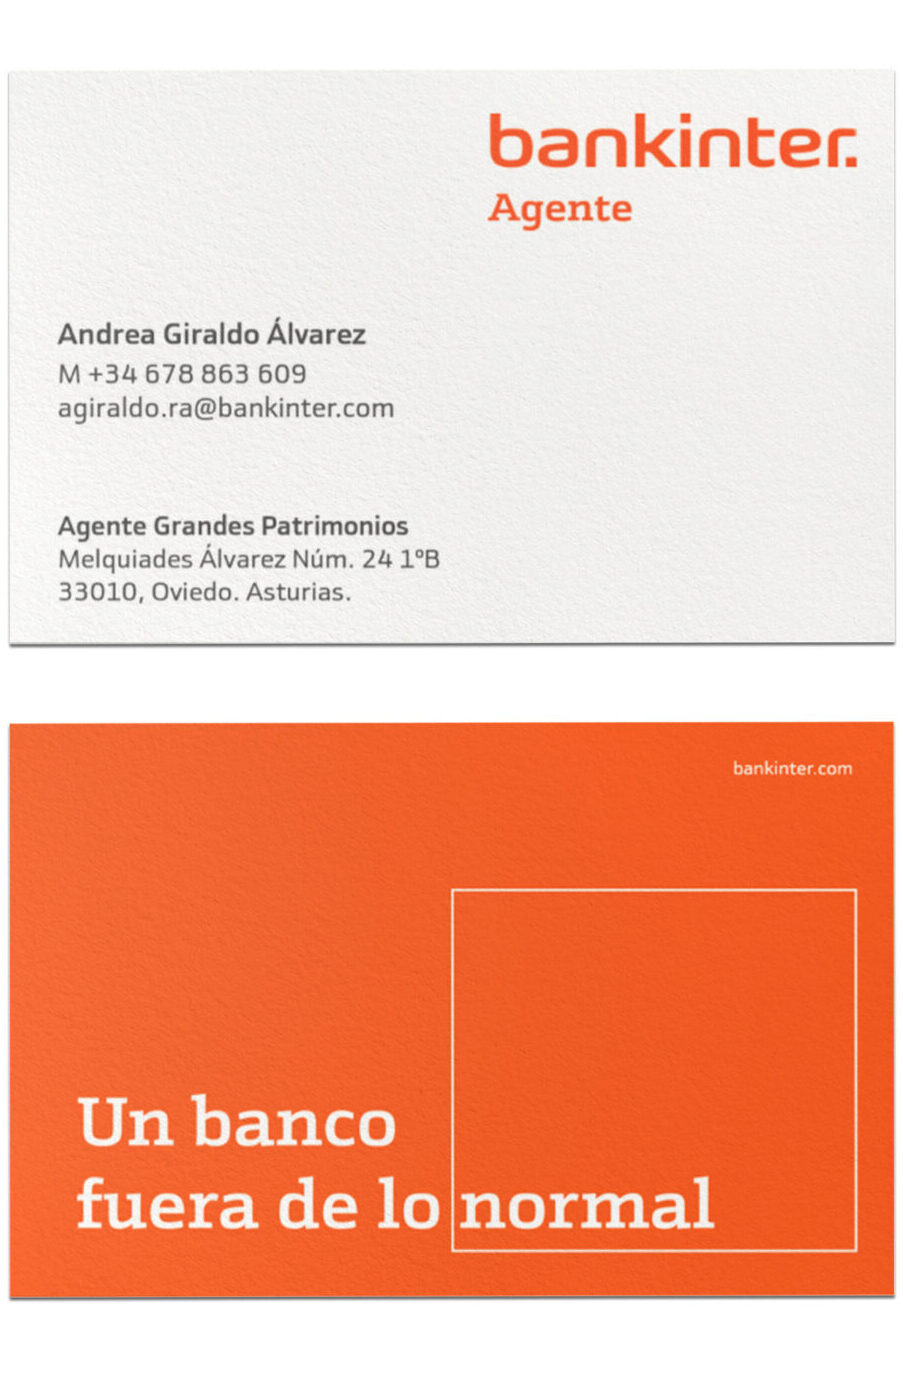 Tarjeta de contacto Andrea Giraldo, asesora financiera y agente bankinter